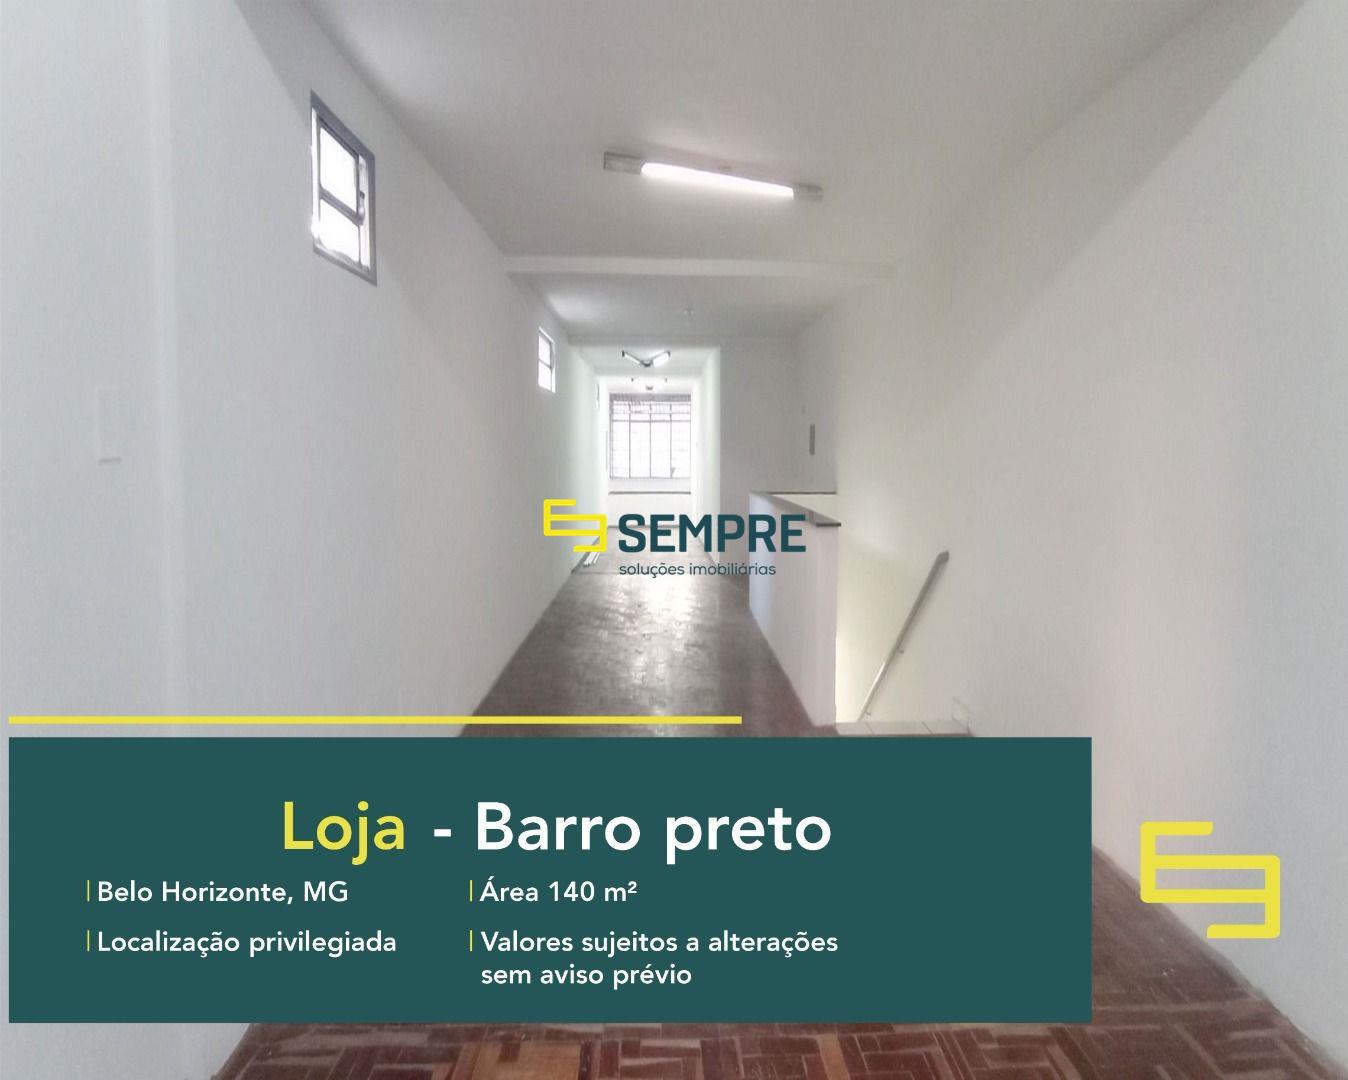 Loja para locação no Barro Preto em Belo Horizonte em excelente localização. Ponto comercial para alugar conta sobretudo com área de 140 m².